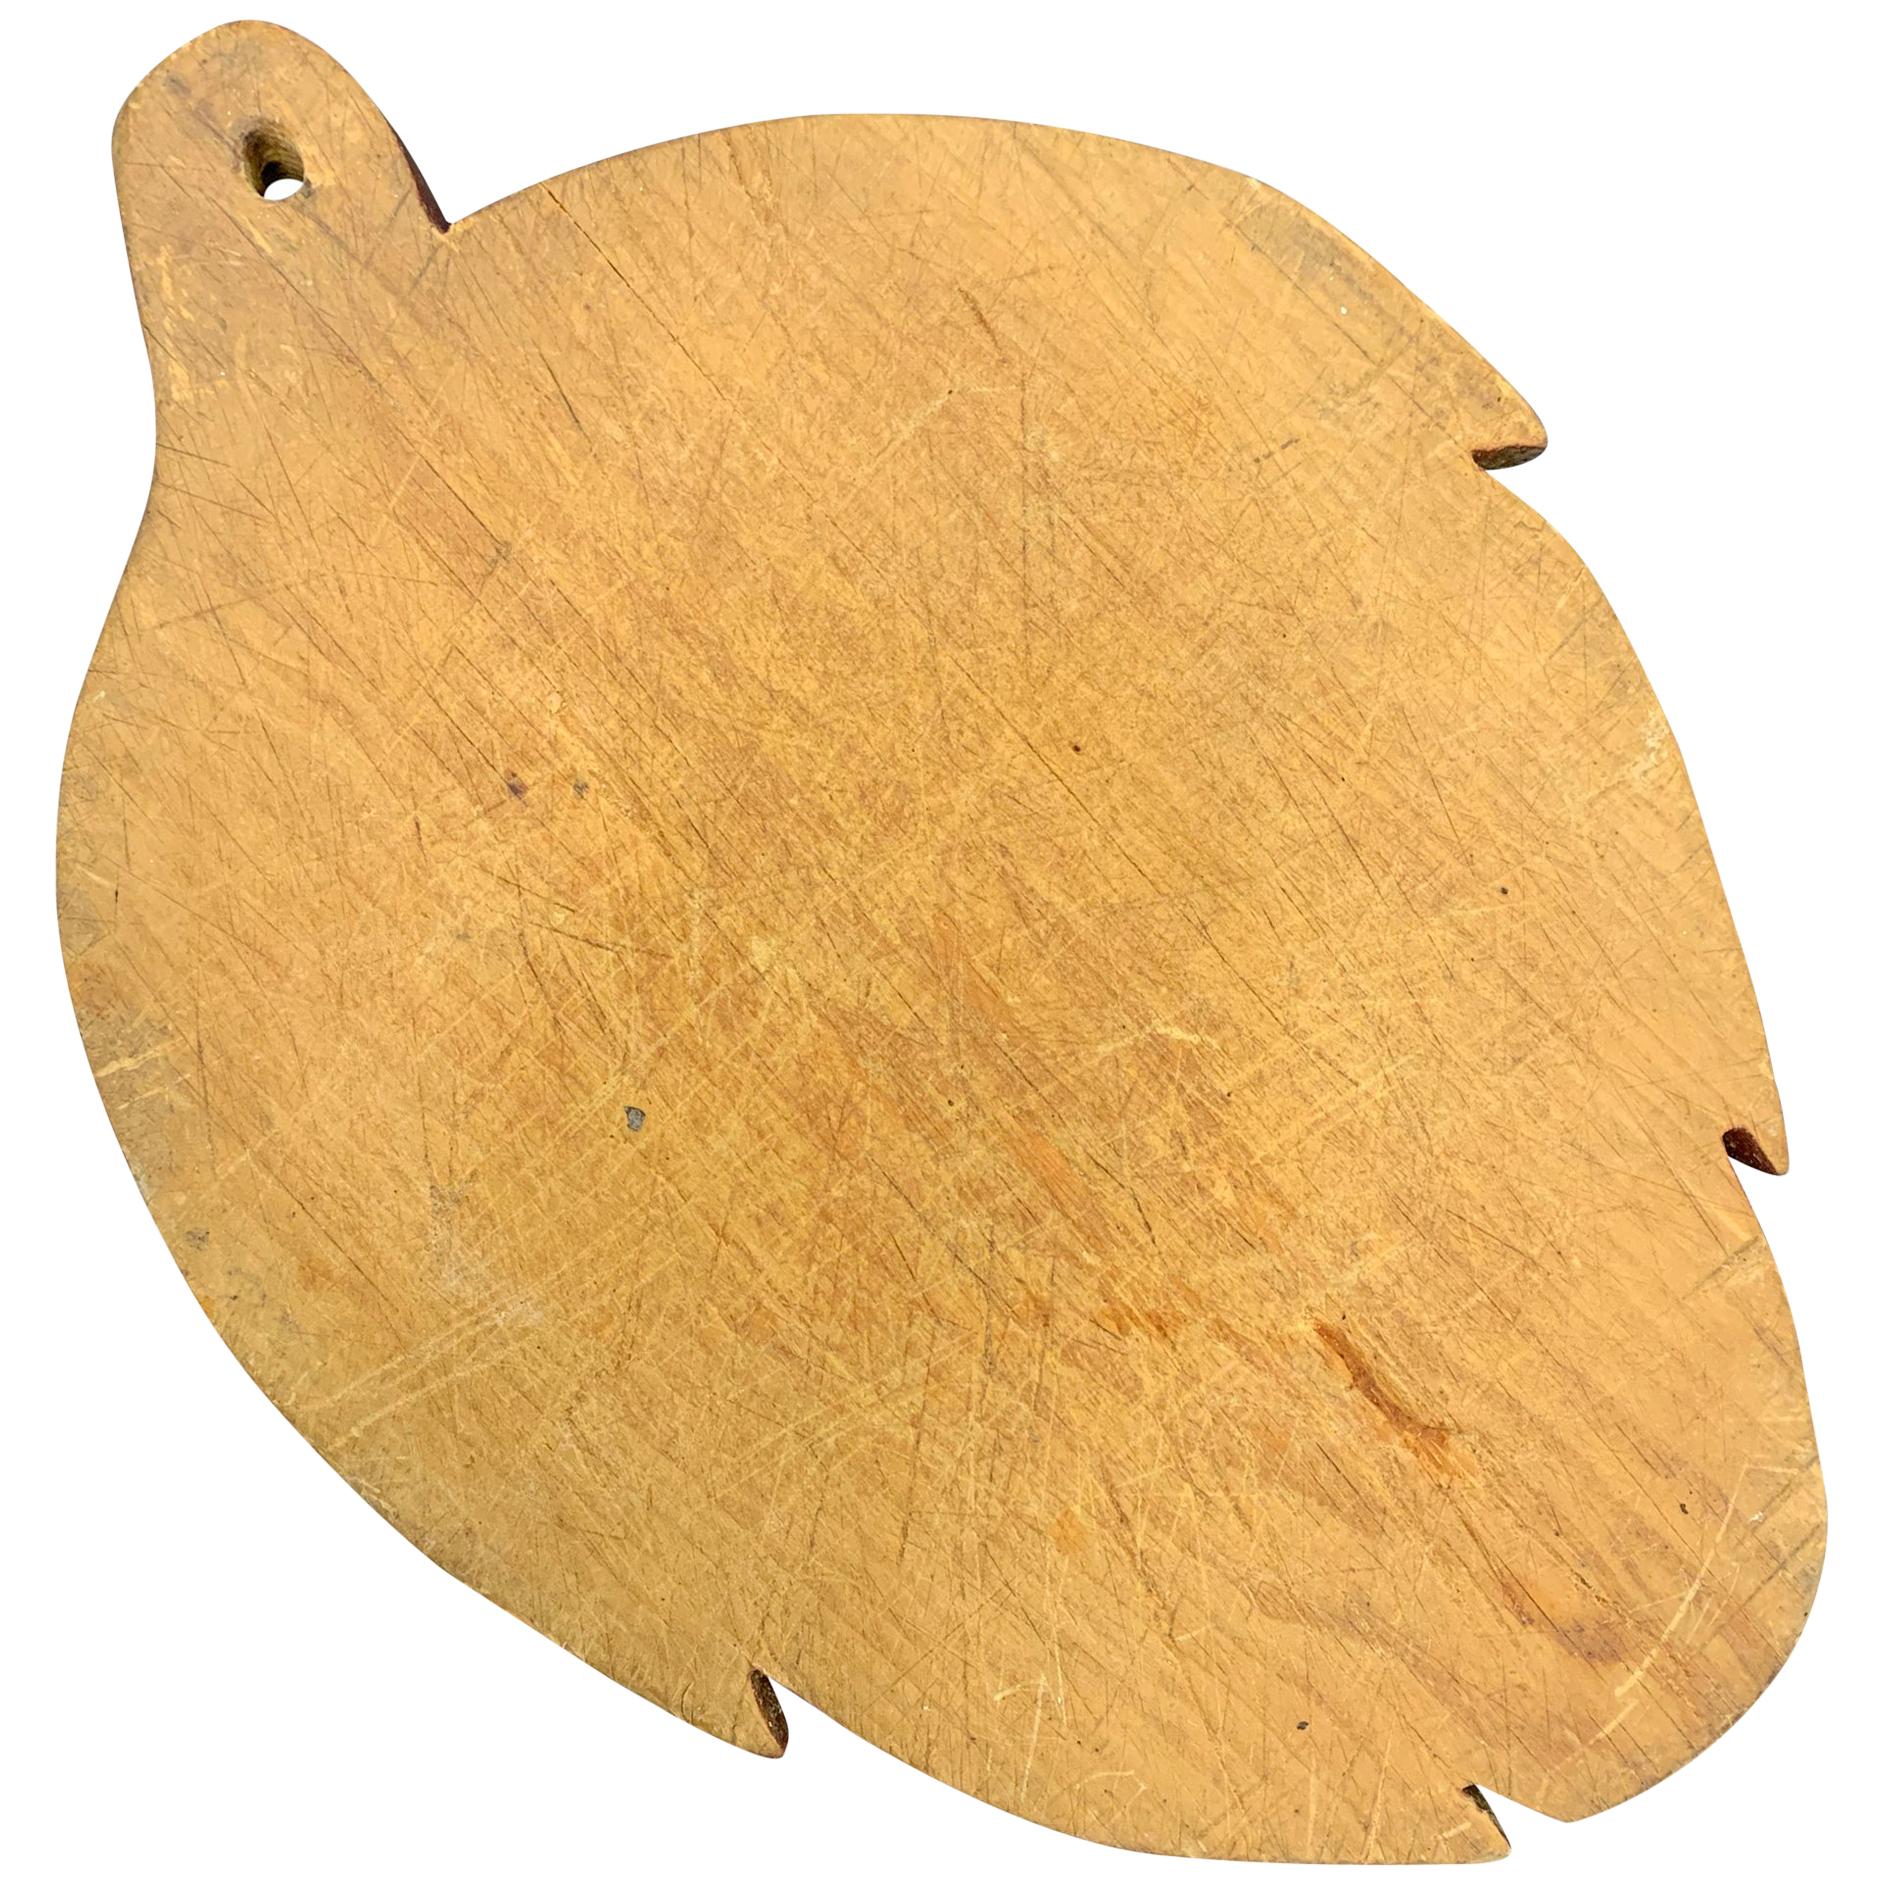 Early 20th Century American Artichoke Form Cutting Board